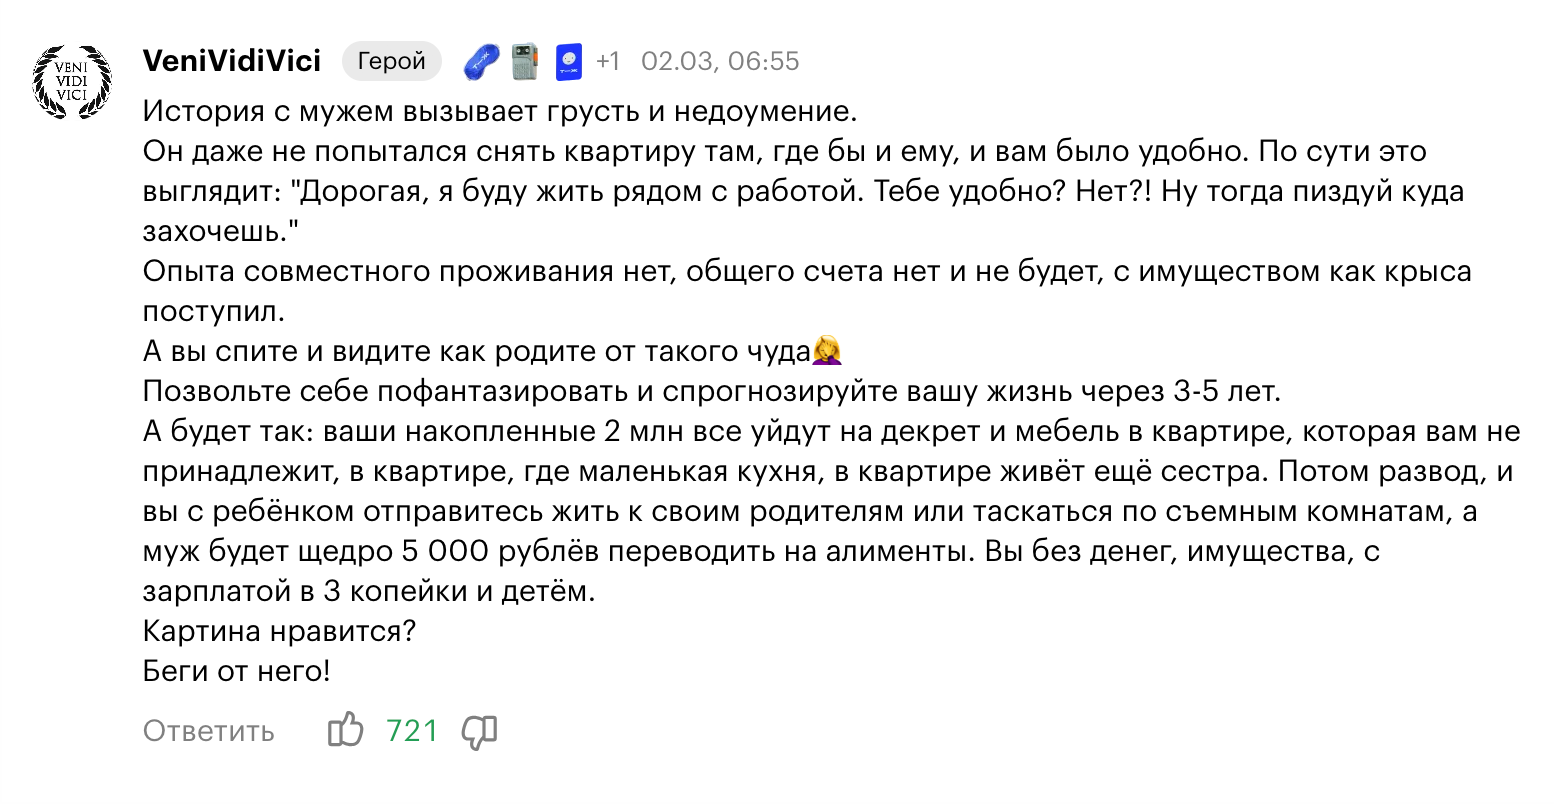 721 лайк у комментария к дневнику специалиста по реабилитации в Москве с зарплатой 75 000 ₽